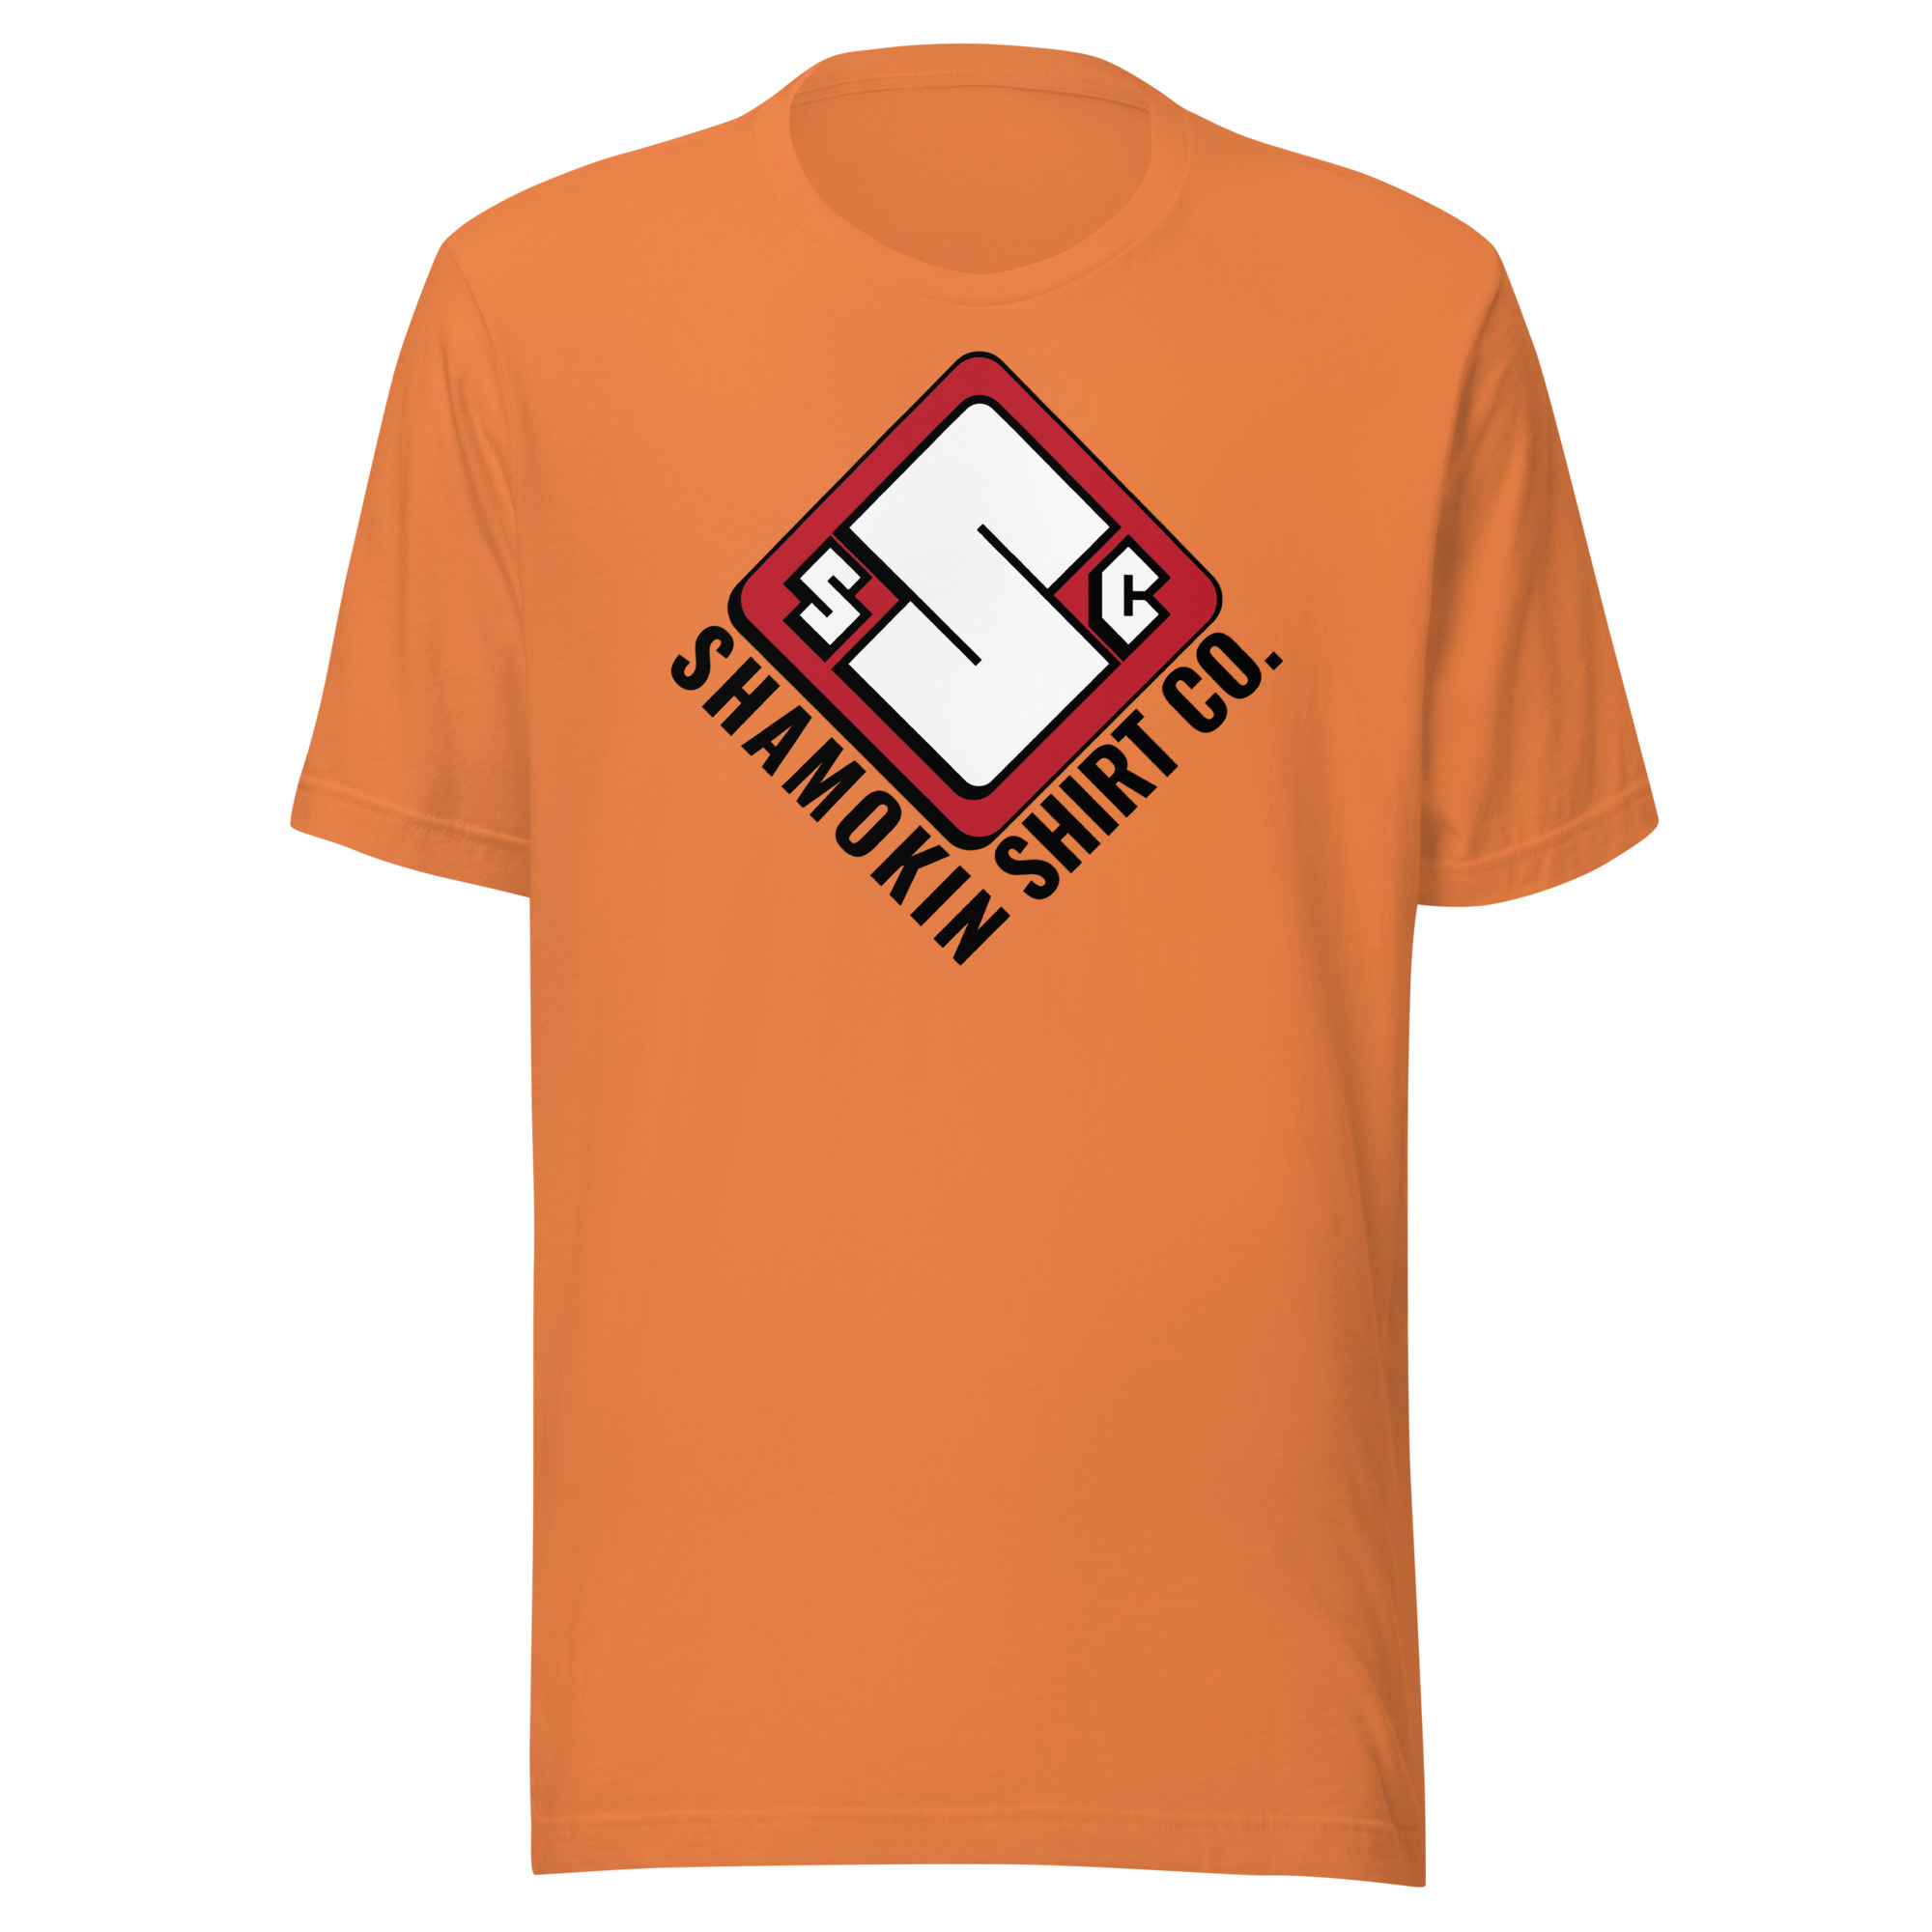 Shamokin Shirt Company Unisex t-shirt - Shamokin Shirt Company